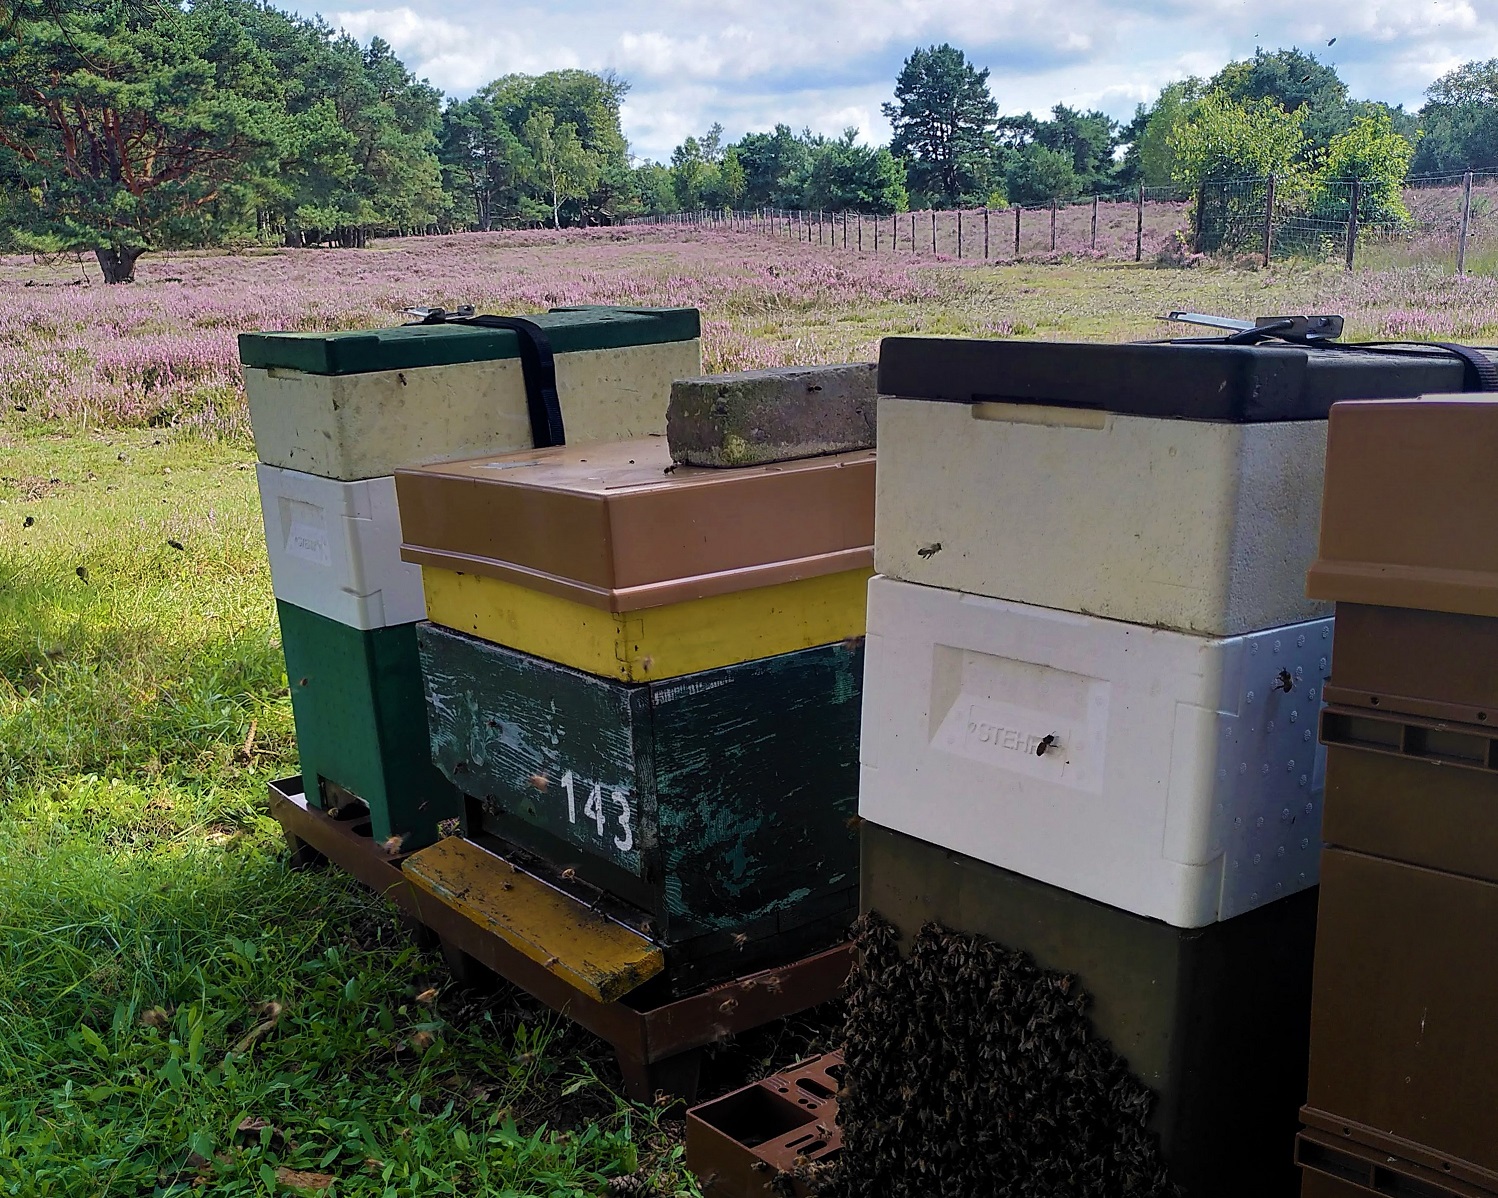 "Bijenkasten: werking van Propolis"